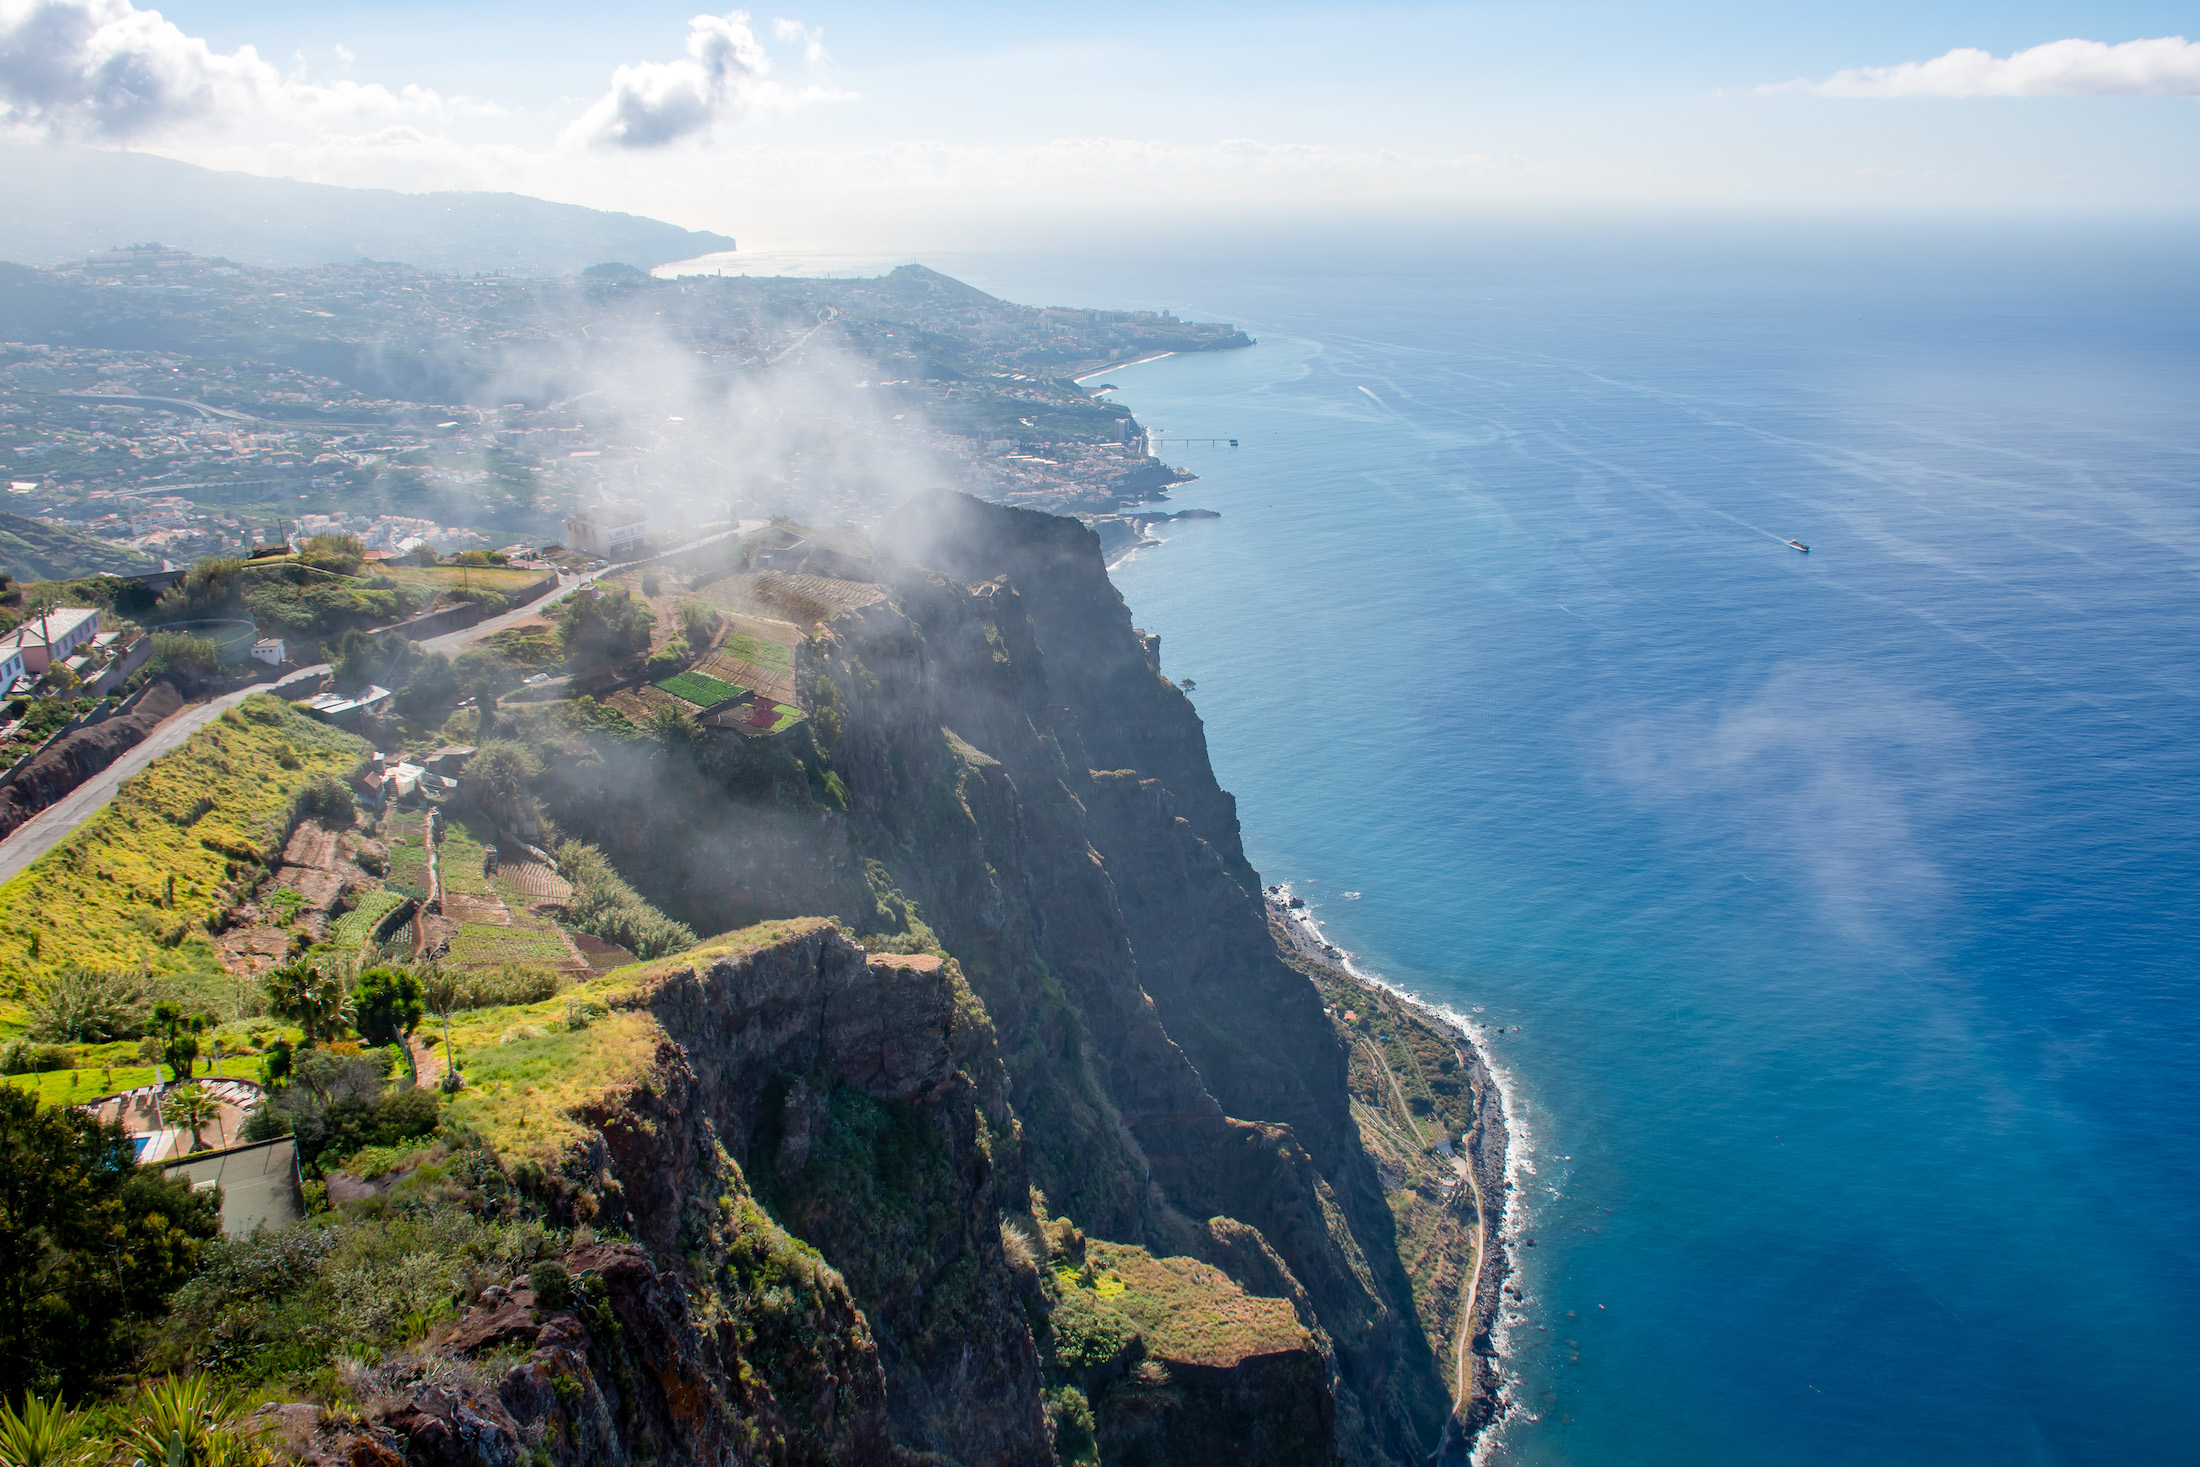 Krijg jij al zin in een reis naar Madeira?